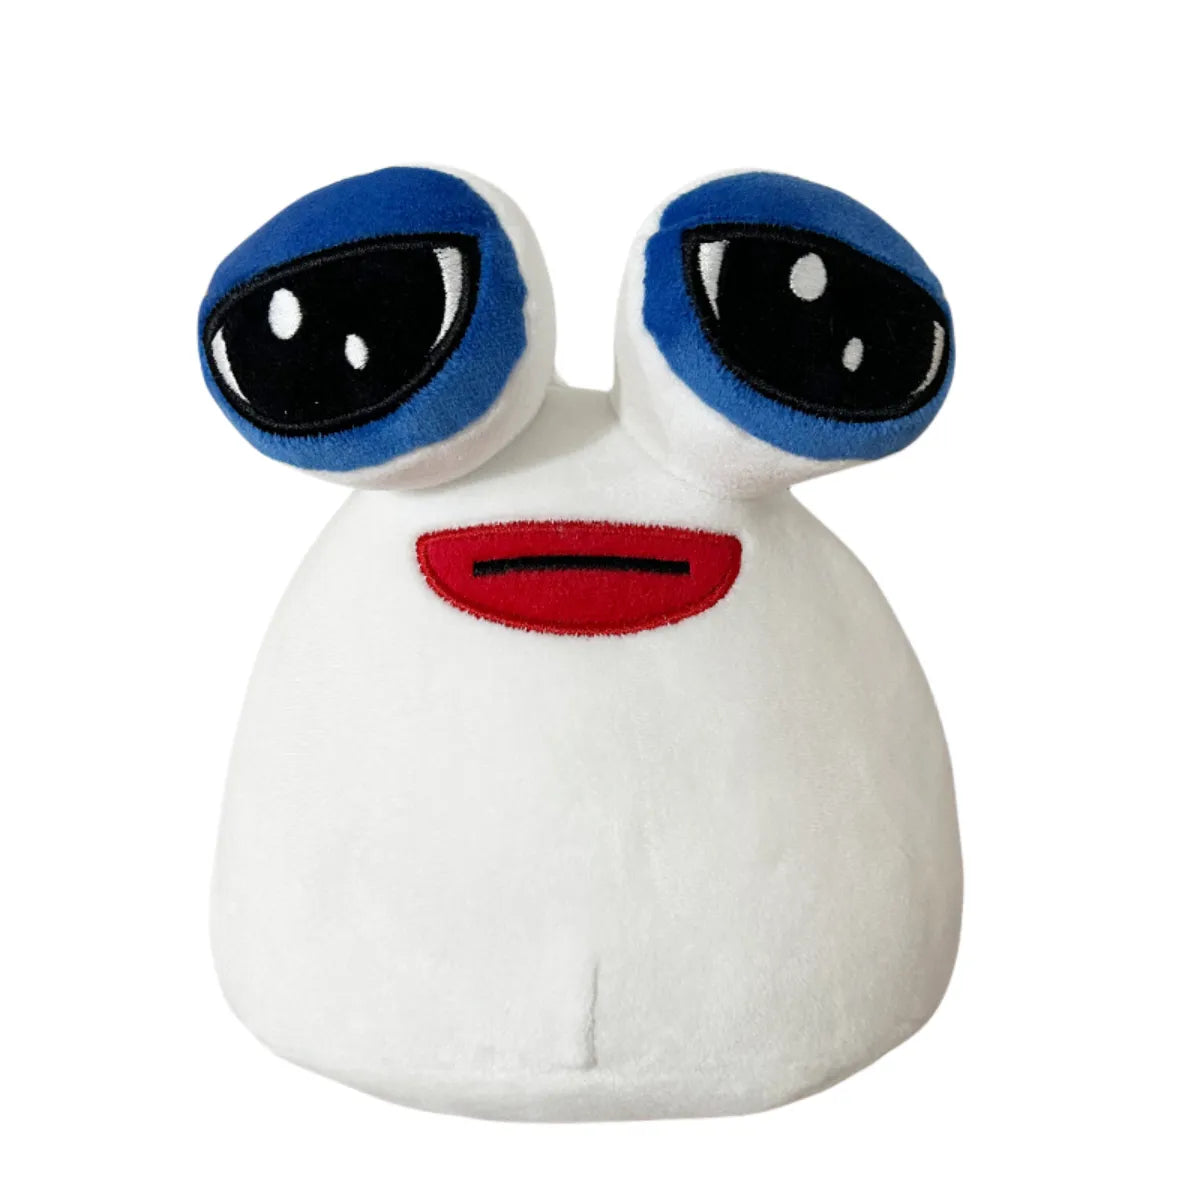 Alien Pou Plush Toy, Hot Game Emotion Alien Stuffed Plush Doll